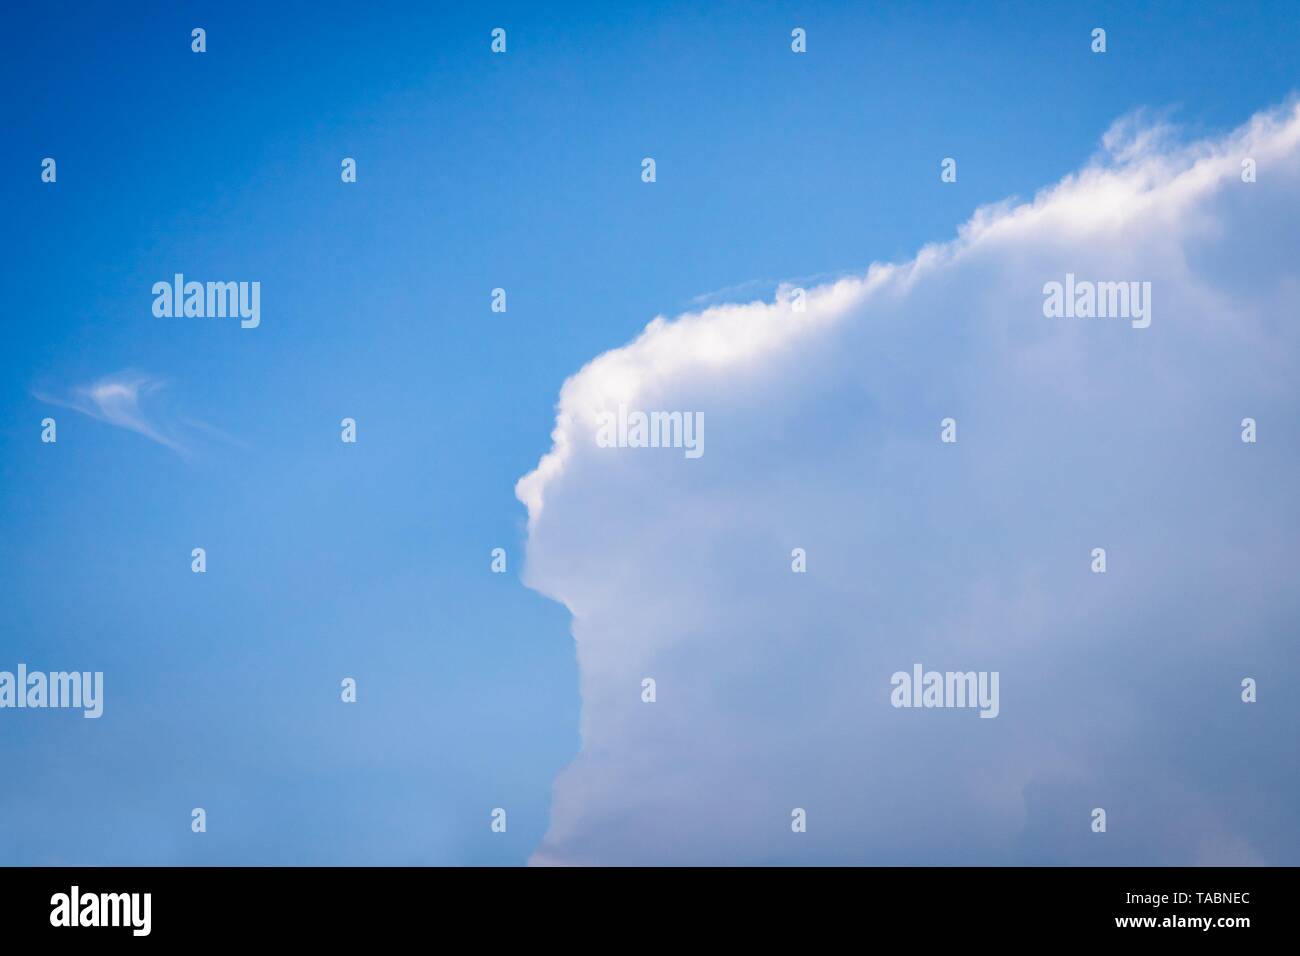 Schöne Wolke in der Form einer Frau mit langem Haar. Farbe blau Himmel Hintergrund. Platz kopieren Stockfoto